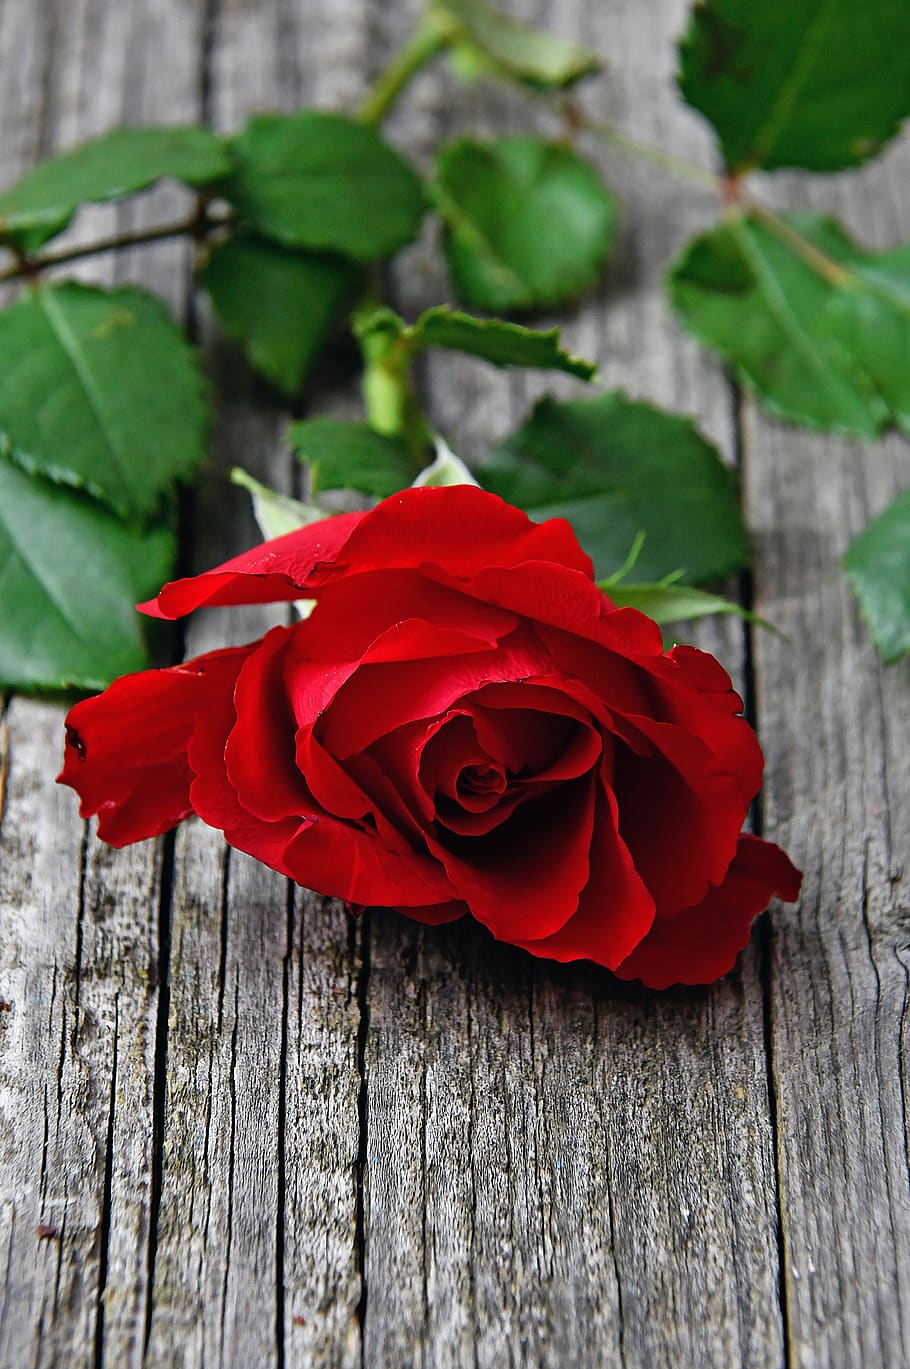 rojo, rosa roja, amor, romántico, rosas, naturaleza, romance, belleza, san valentín, día de san valentín